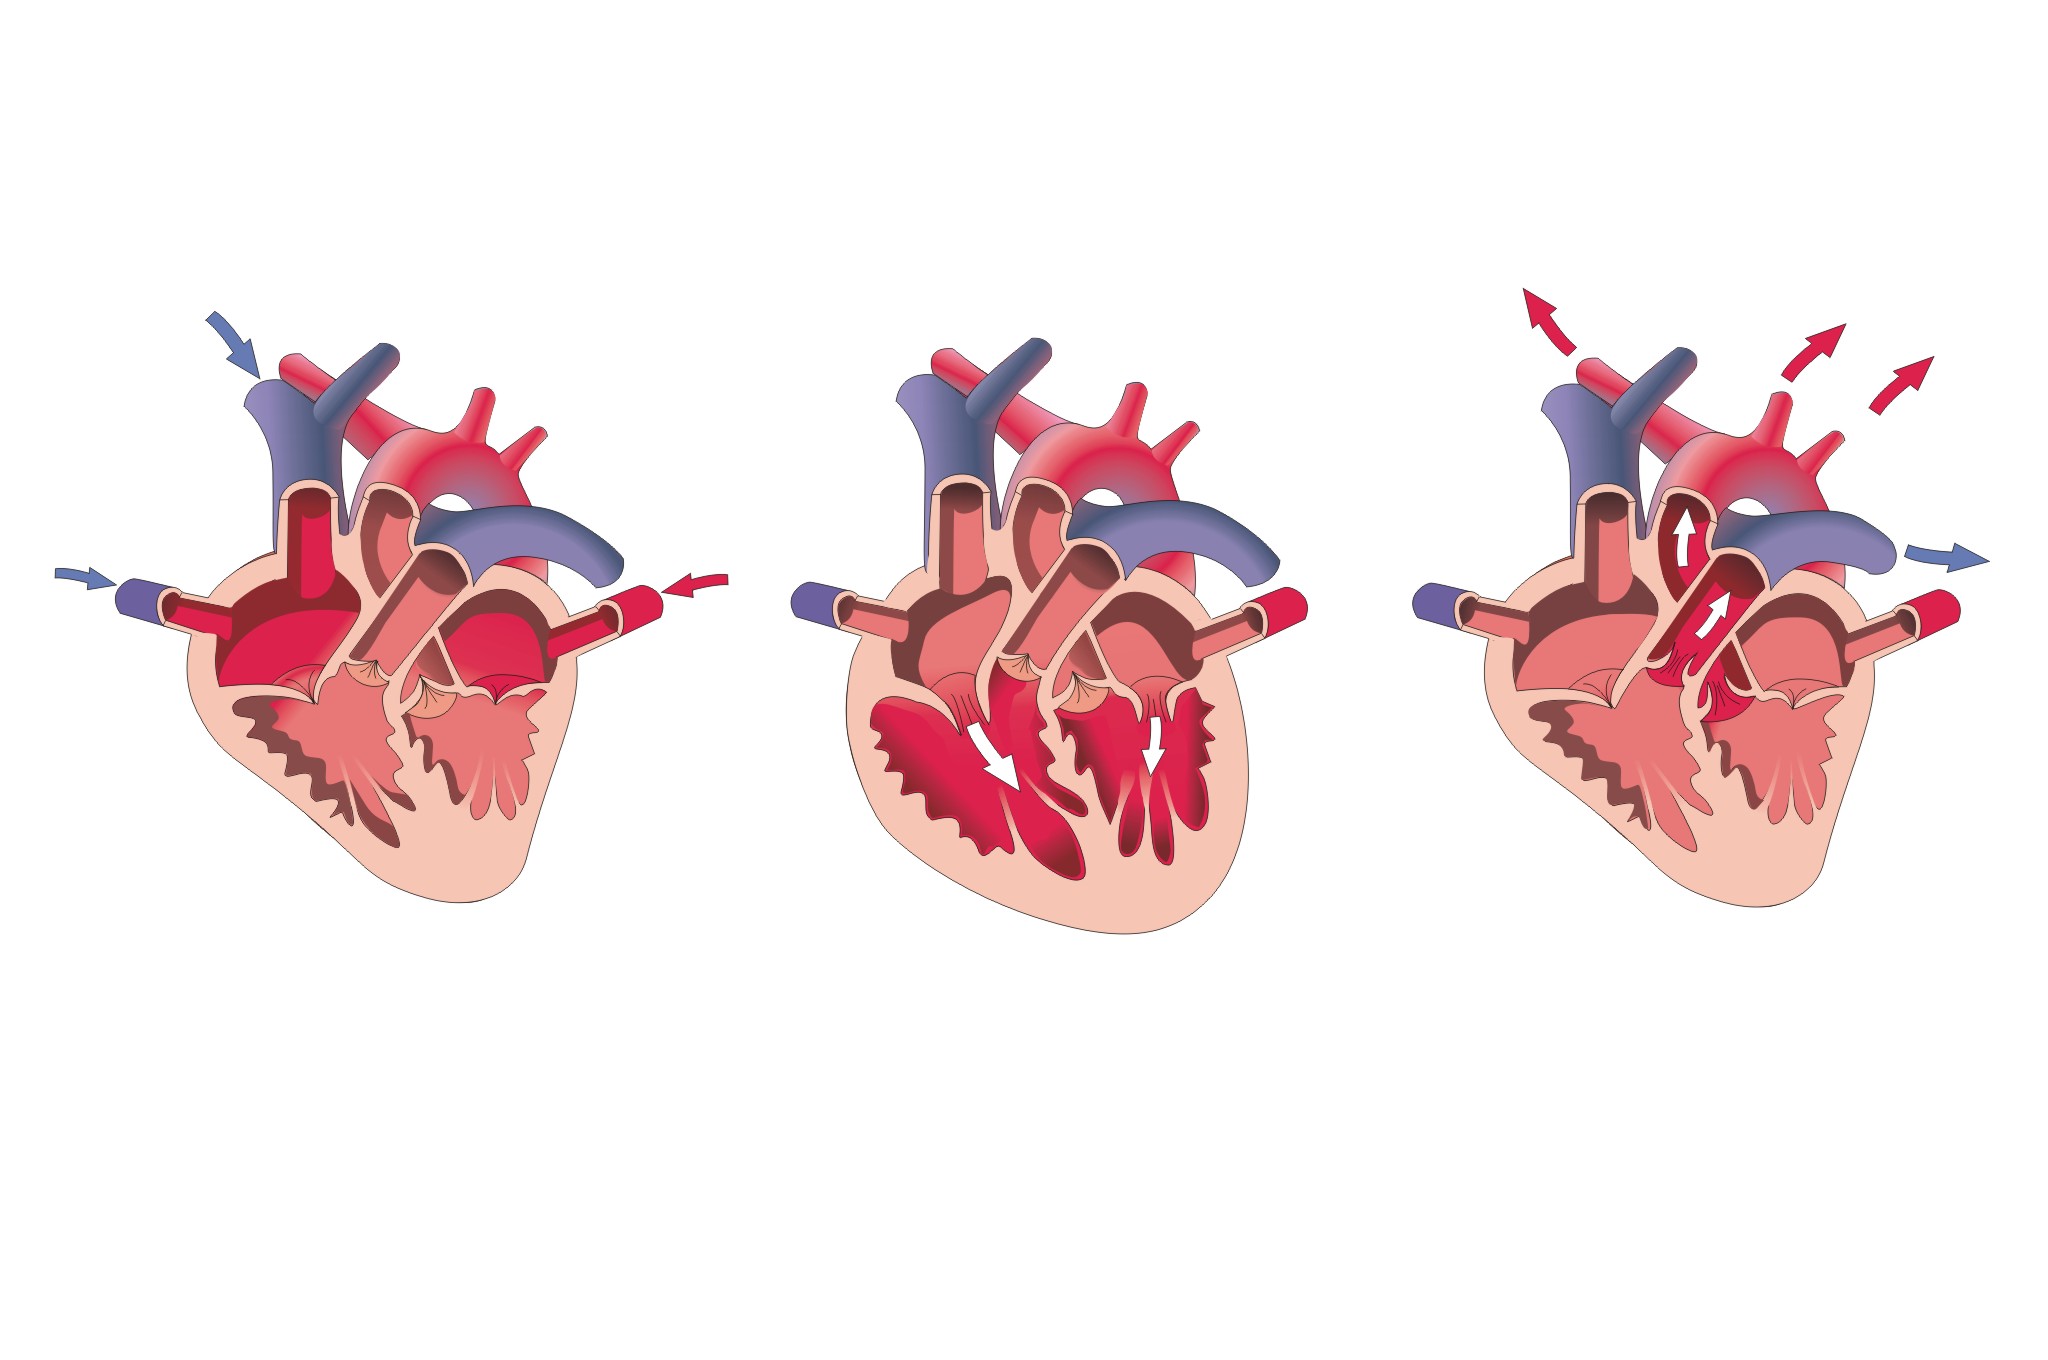 Dibujos esquemáticos sobre el funcionamiento del corazón